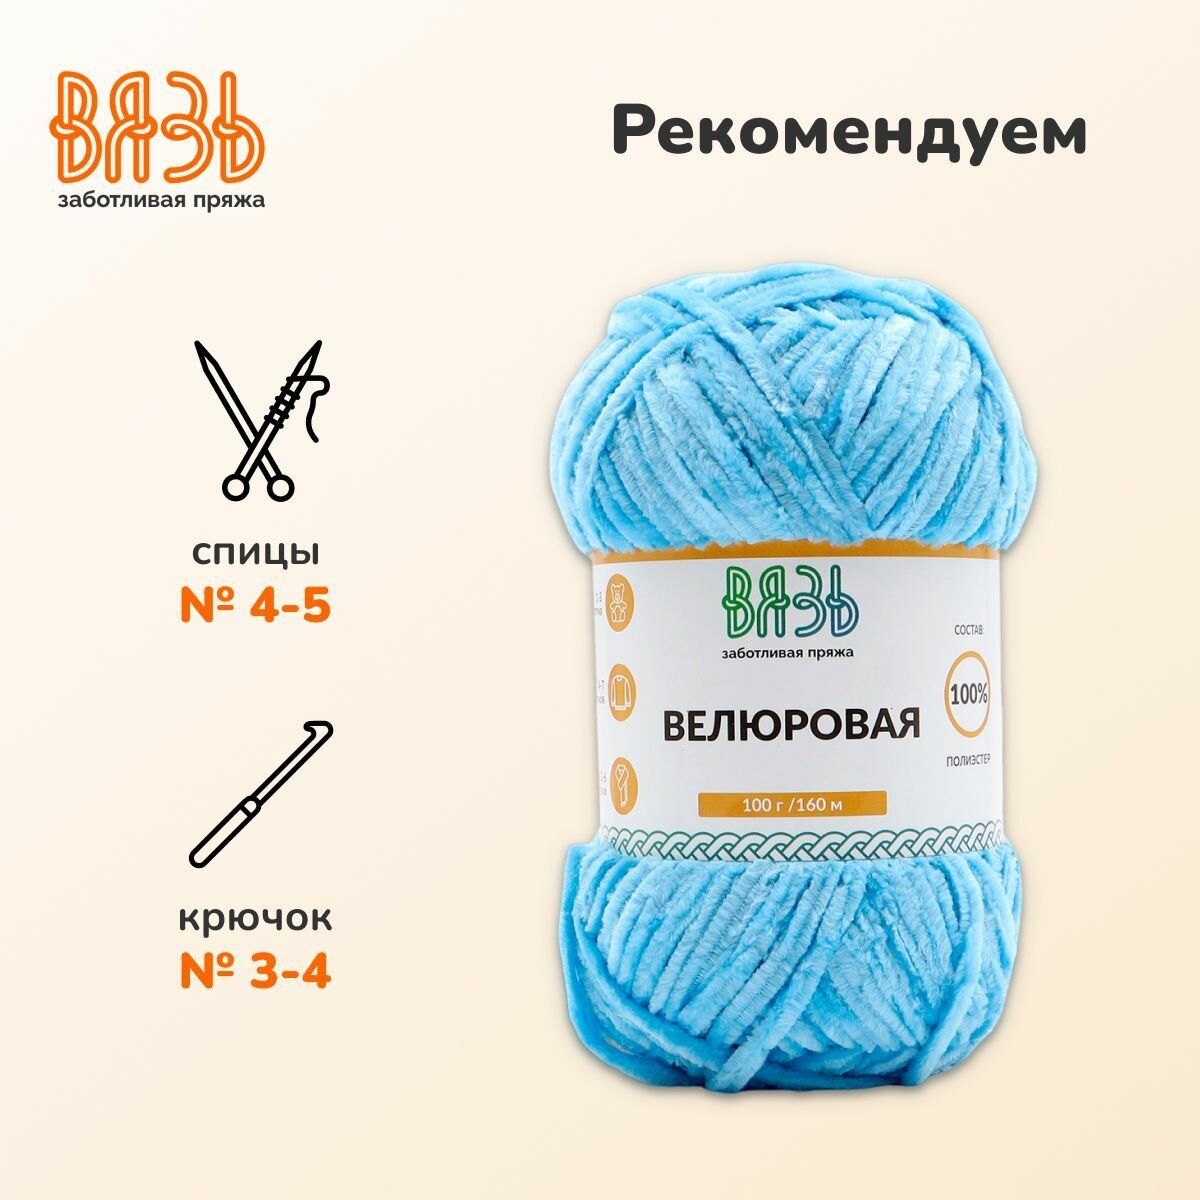 Пряжа для вязания Вязь 'Велюровая' 100г, 160м (100% полиэстер) (10 голубой), 3 мотка